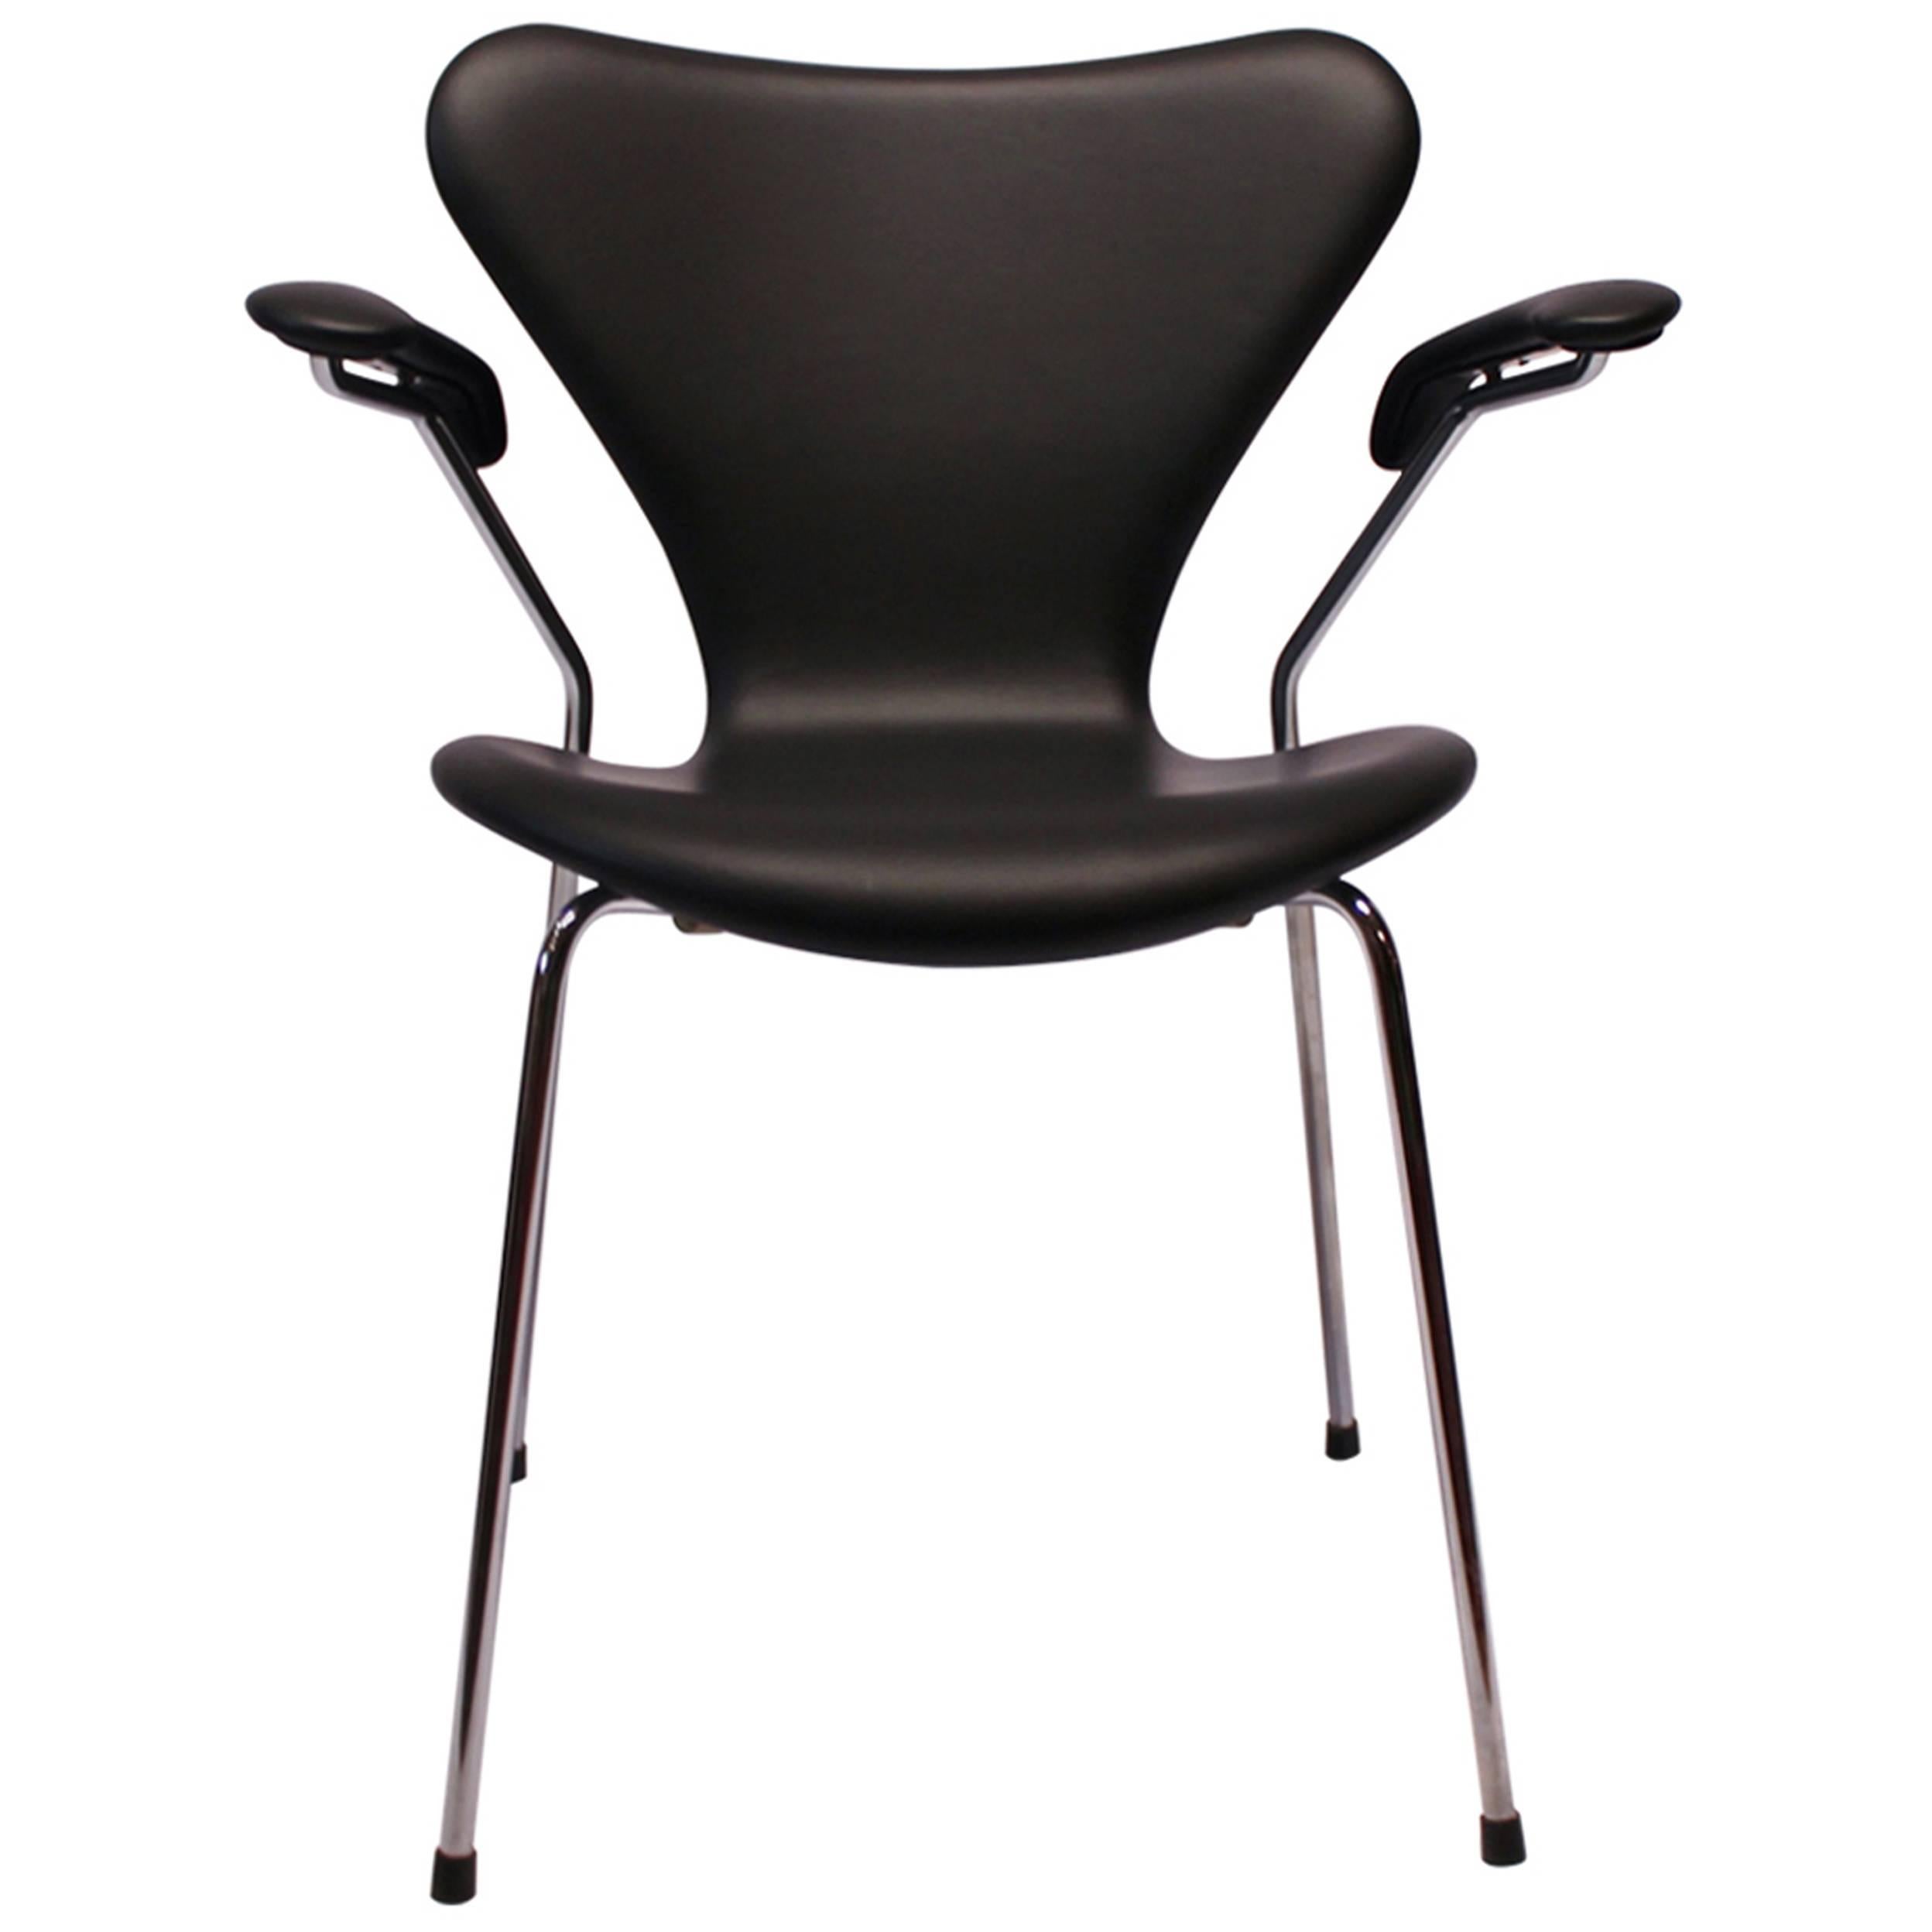 Chaise Seven, modèle 3207, avec accoudoir en cuir Classic noir par Arne Jacobsen